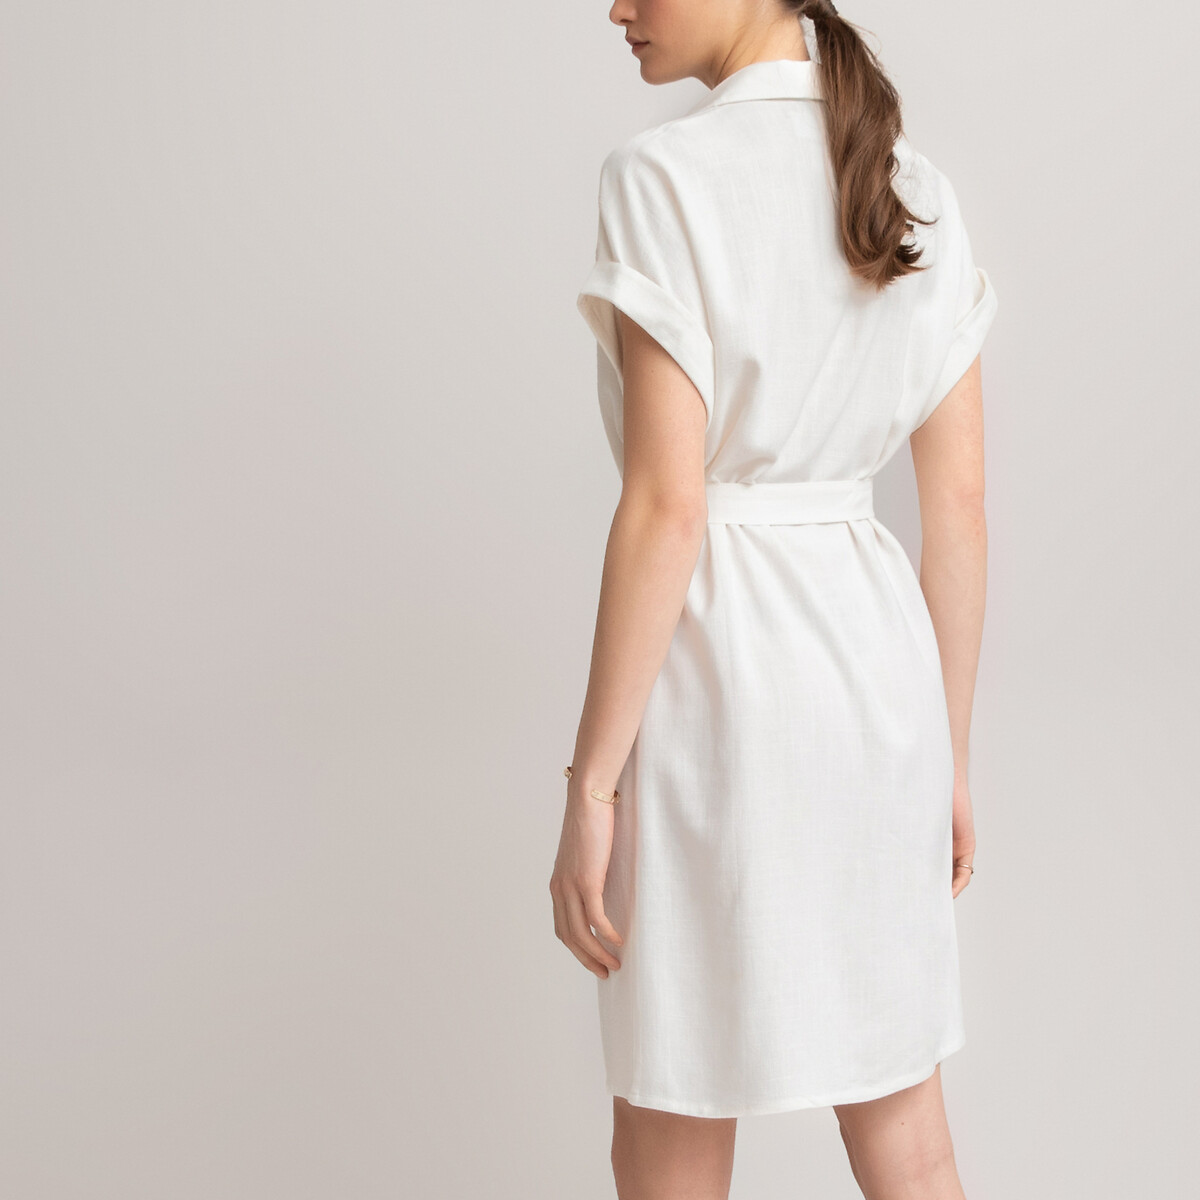 Платье-рубашка LaRedoute С короткими рукавами 46 (FR) - 52 (RUS) белый, размер 46 (FR) - 52 (RUS) С короткими рукавами 46 (FR) - 52 (RUS) белый - фото 3